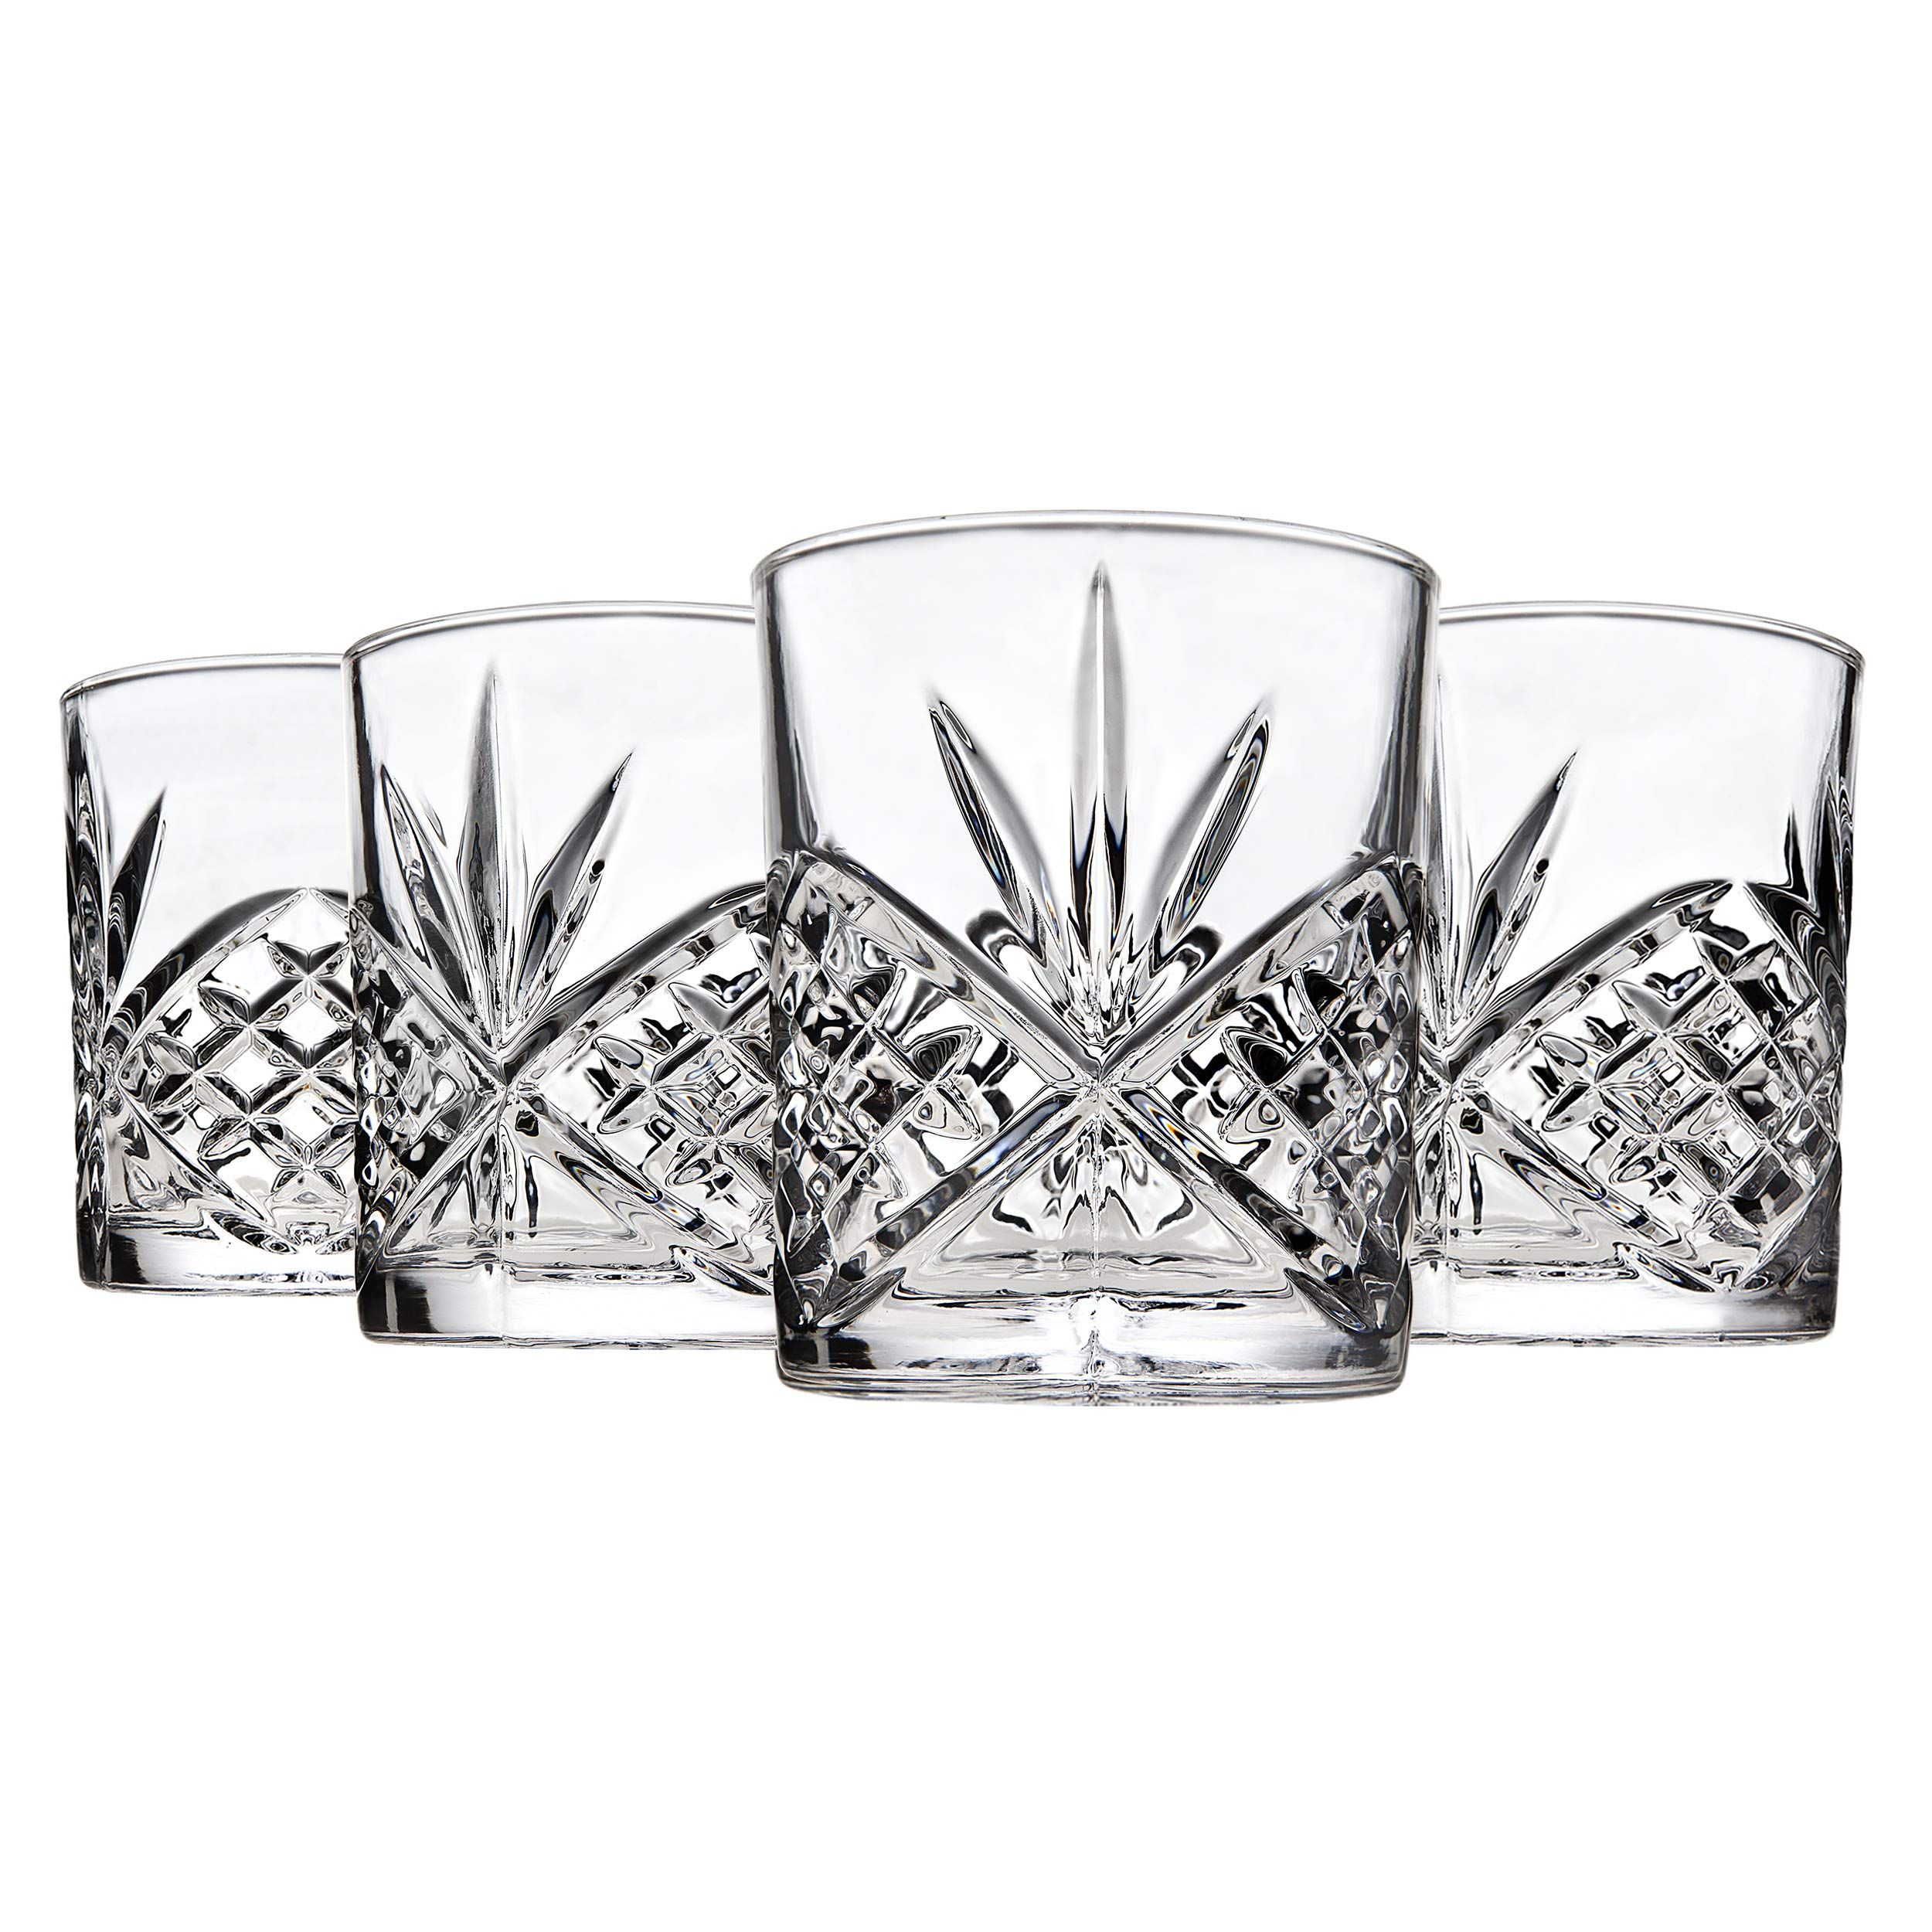 Godinger Dublin Double Old Fashioned Glasses, 11oz, Set of 4 | Amazon (US)